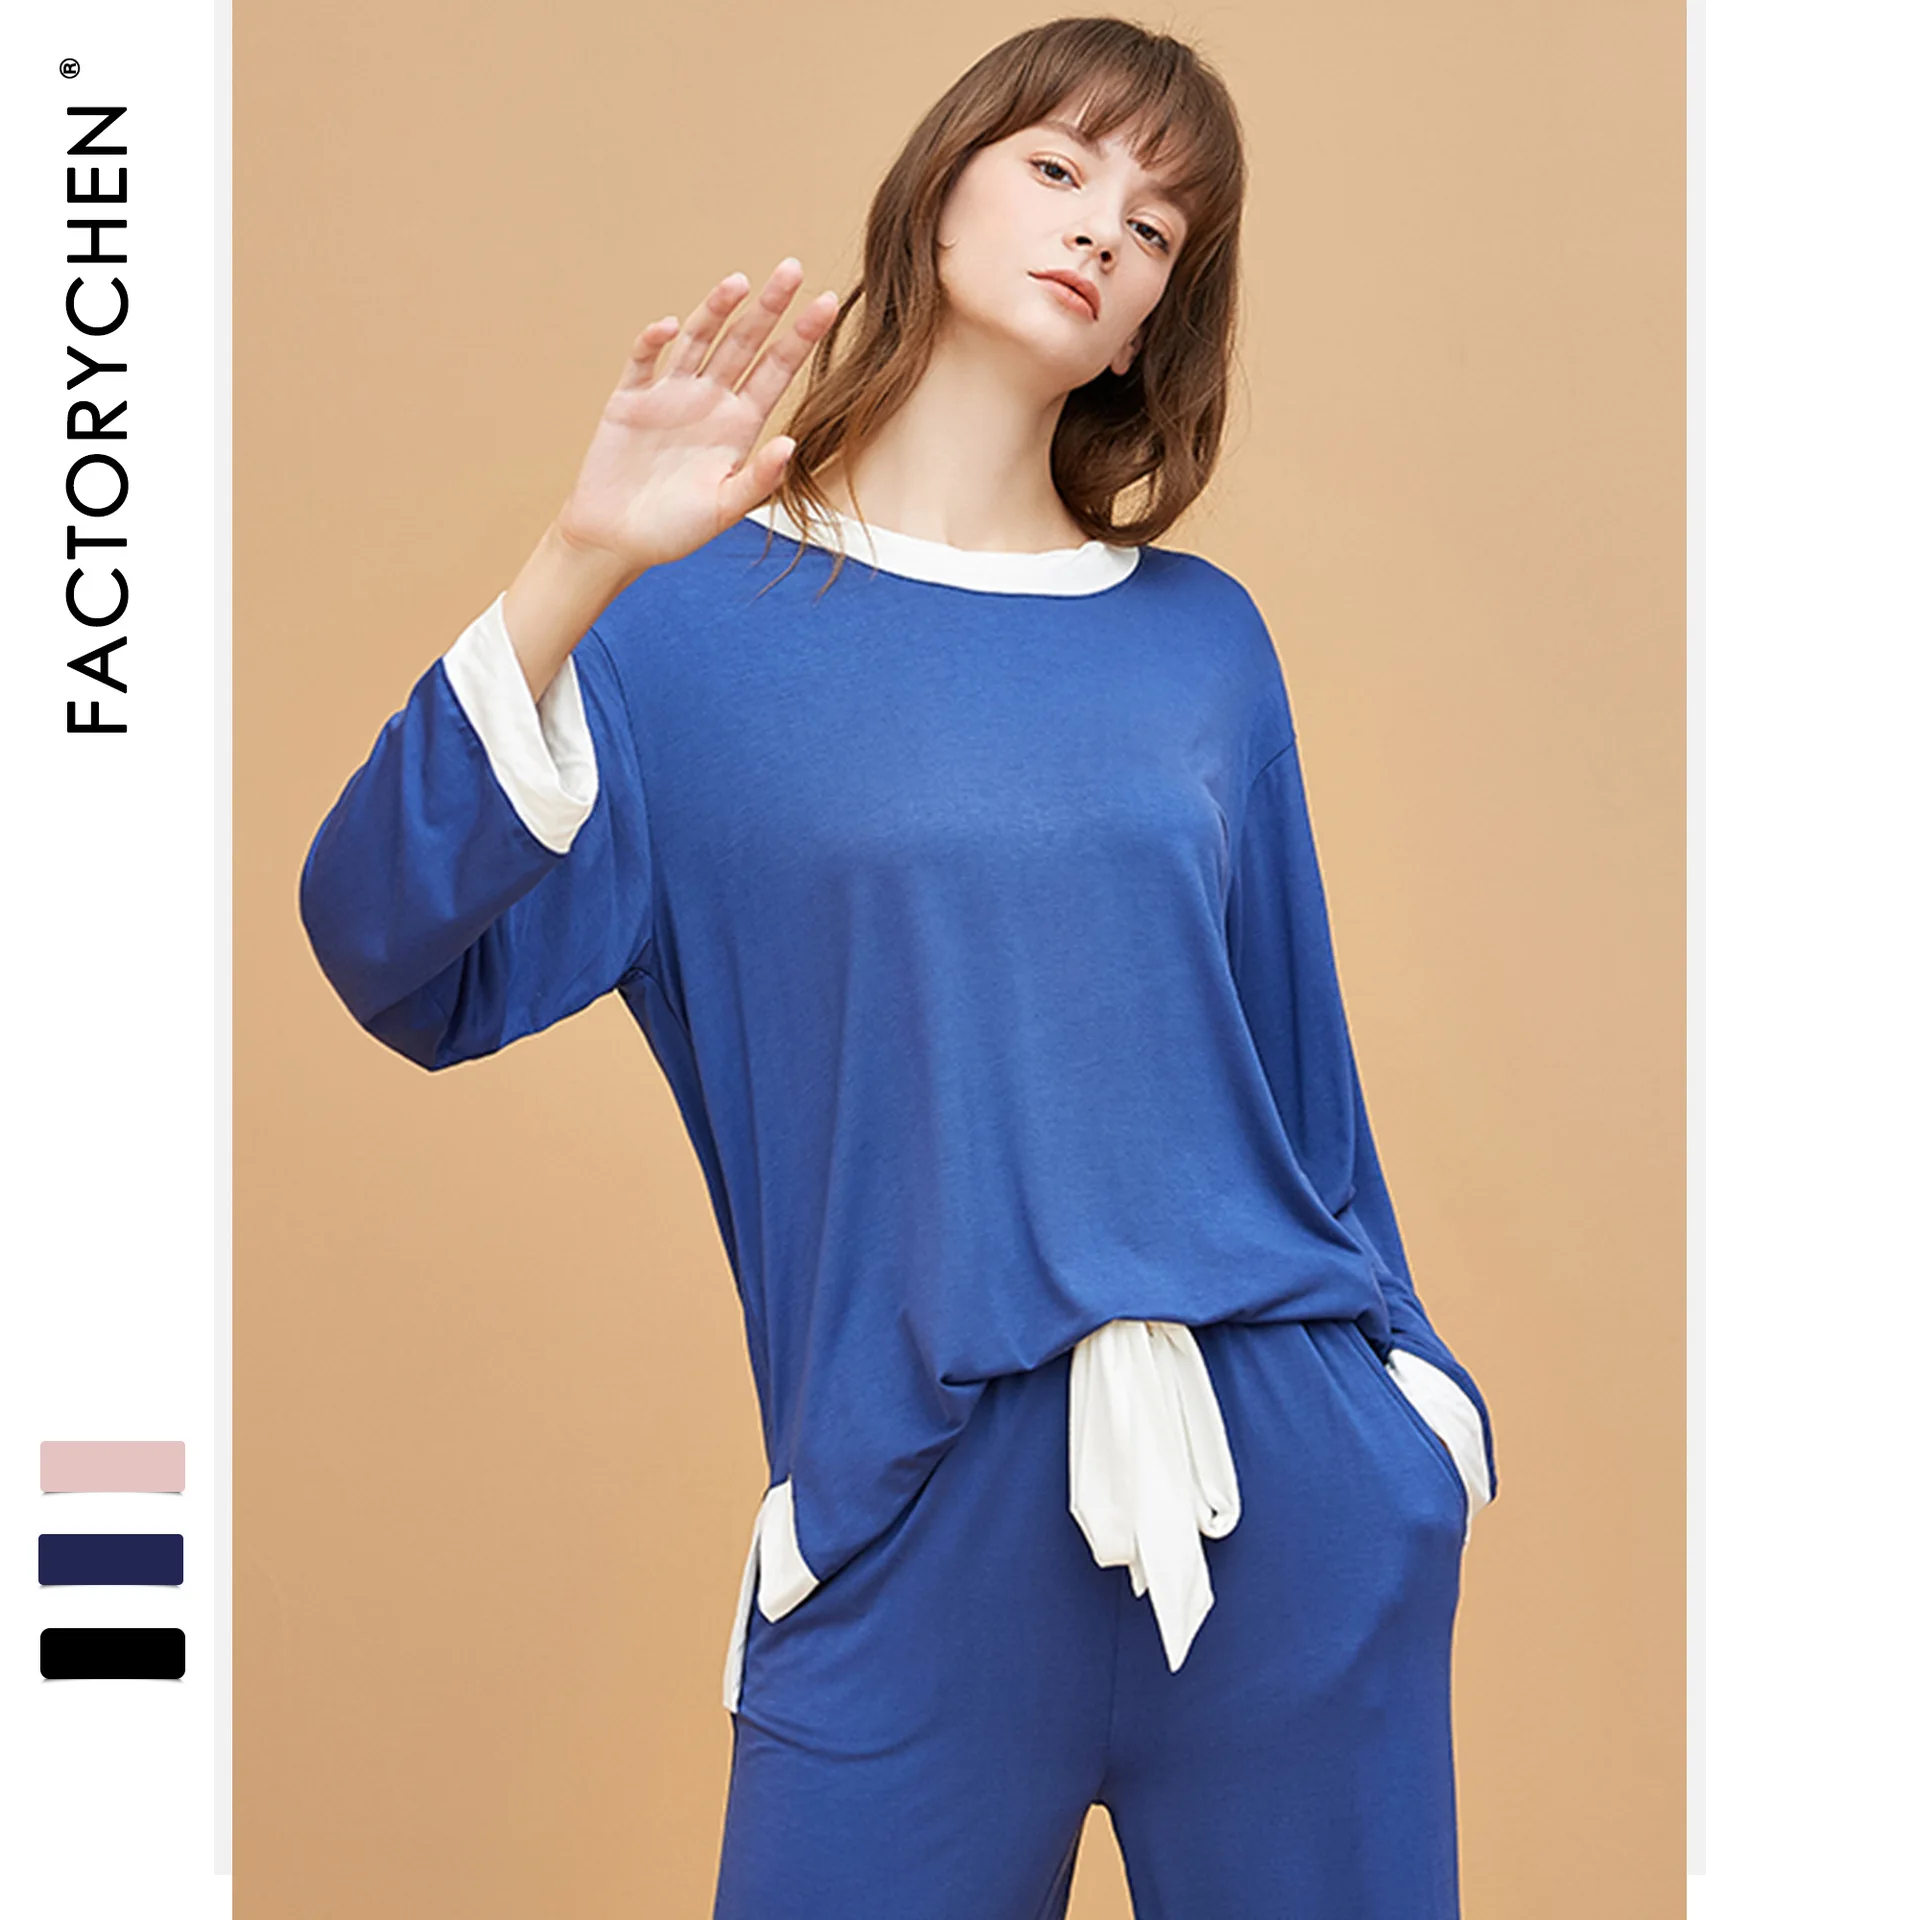 JRMISSLI, домашняя одежда большого размера, повседневные наборы пижам с длинным рукавом, хлопковый модальный костюм для сна, женская пижама на осень и зиму - Цвет: Синий